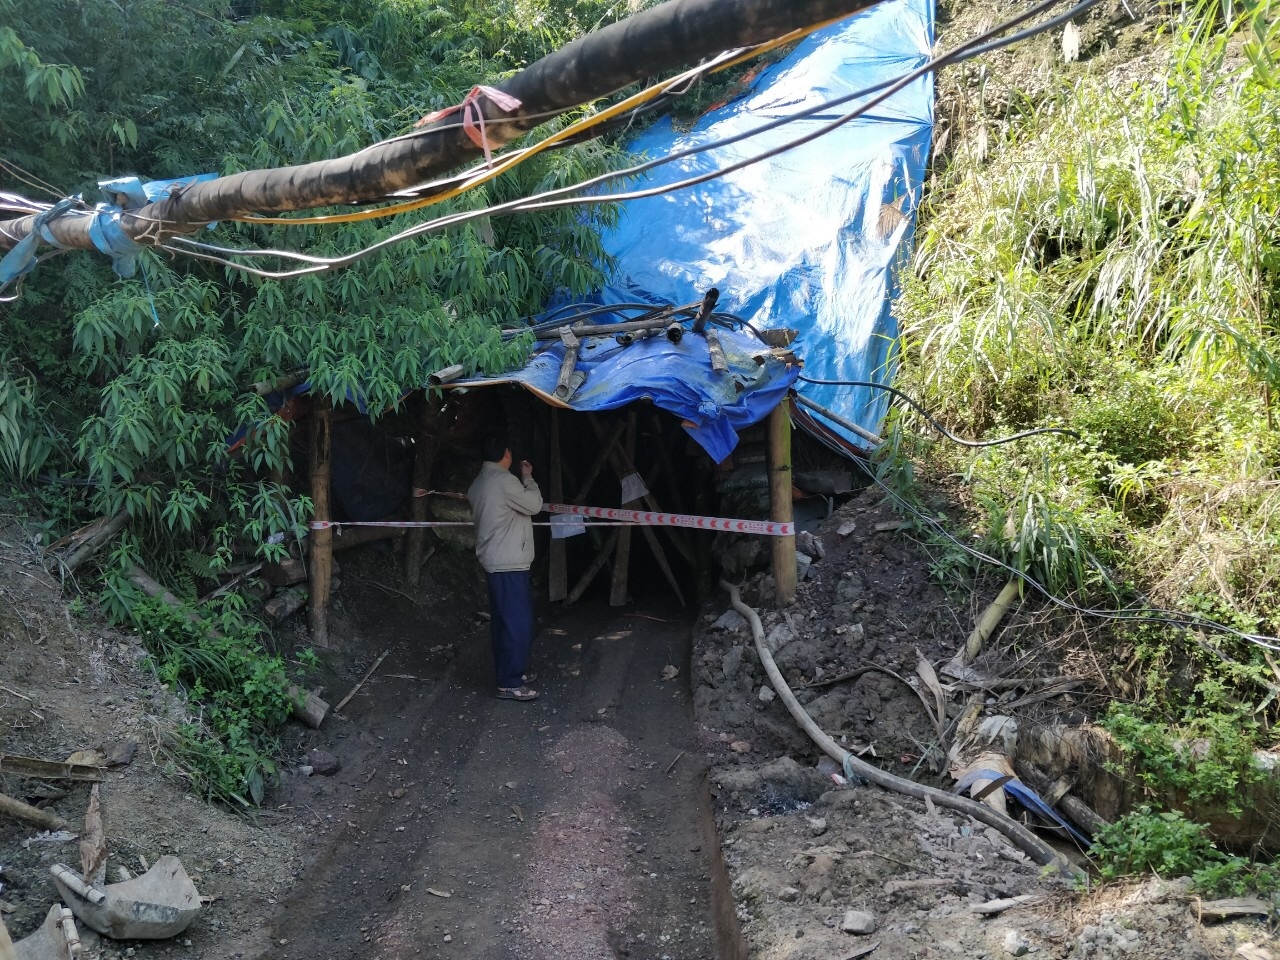 Cừa hầm lò khai thác quặng tại xóm Bản Khuông - Cốc Chia, xã Đoài Dương, huyện Trùng Khánh, tỉnh Cao Bằng.